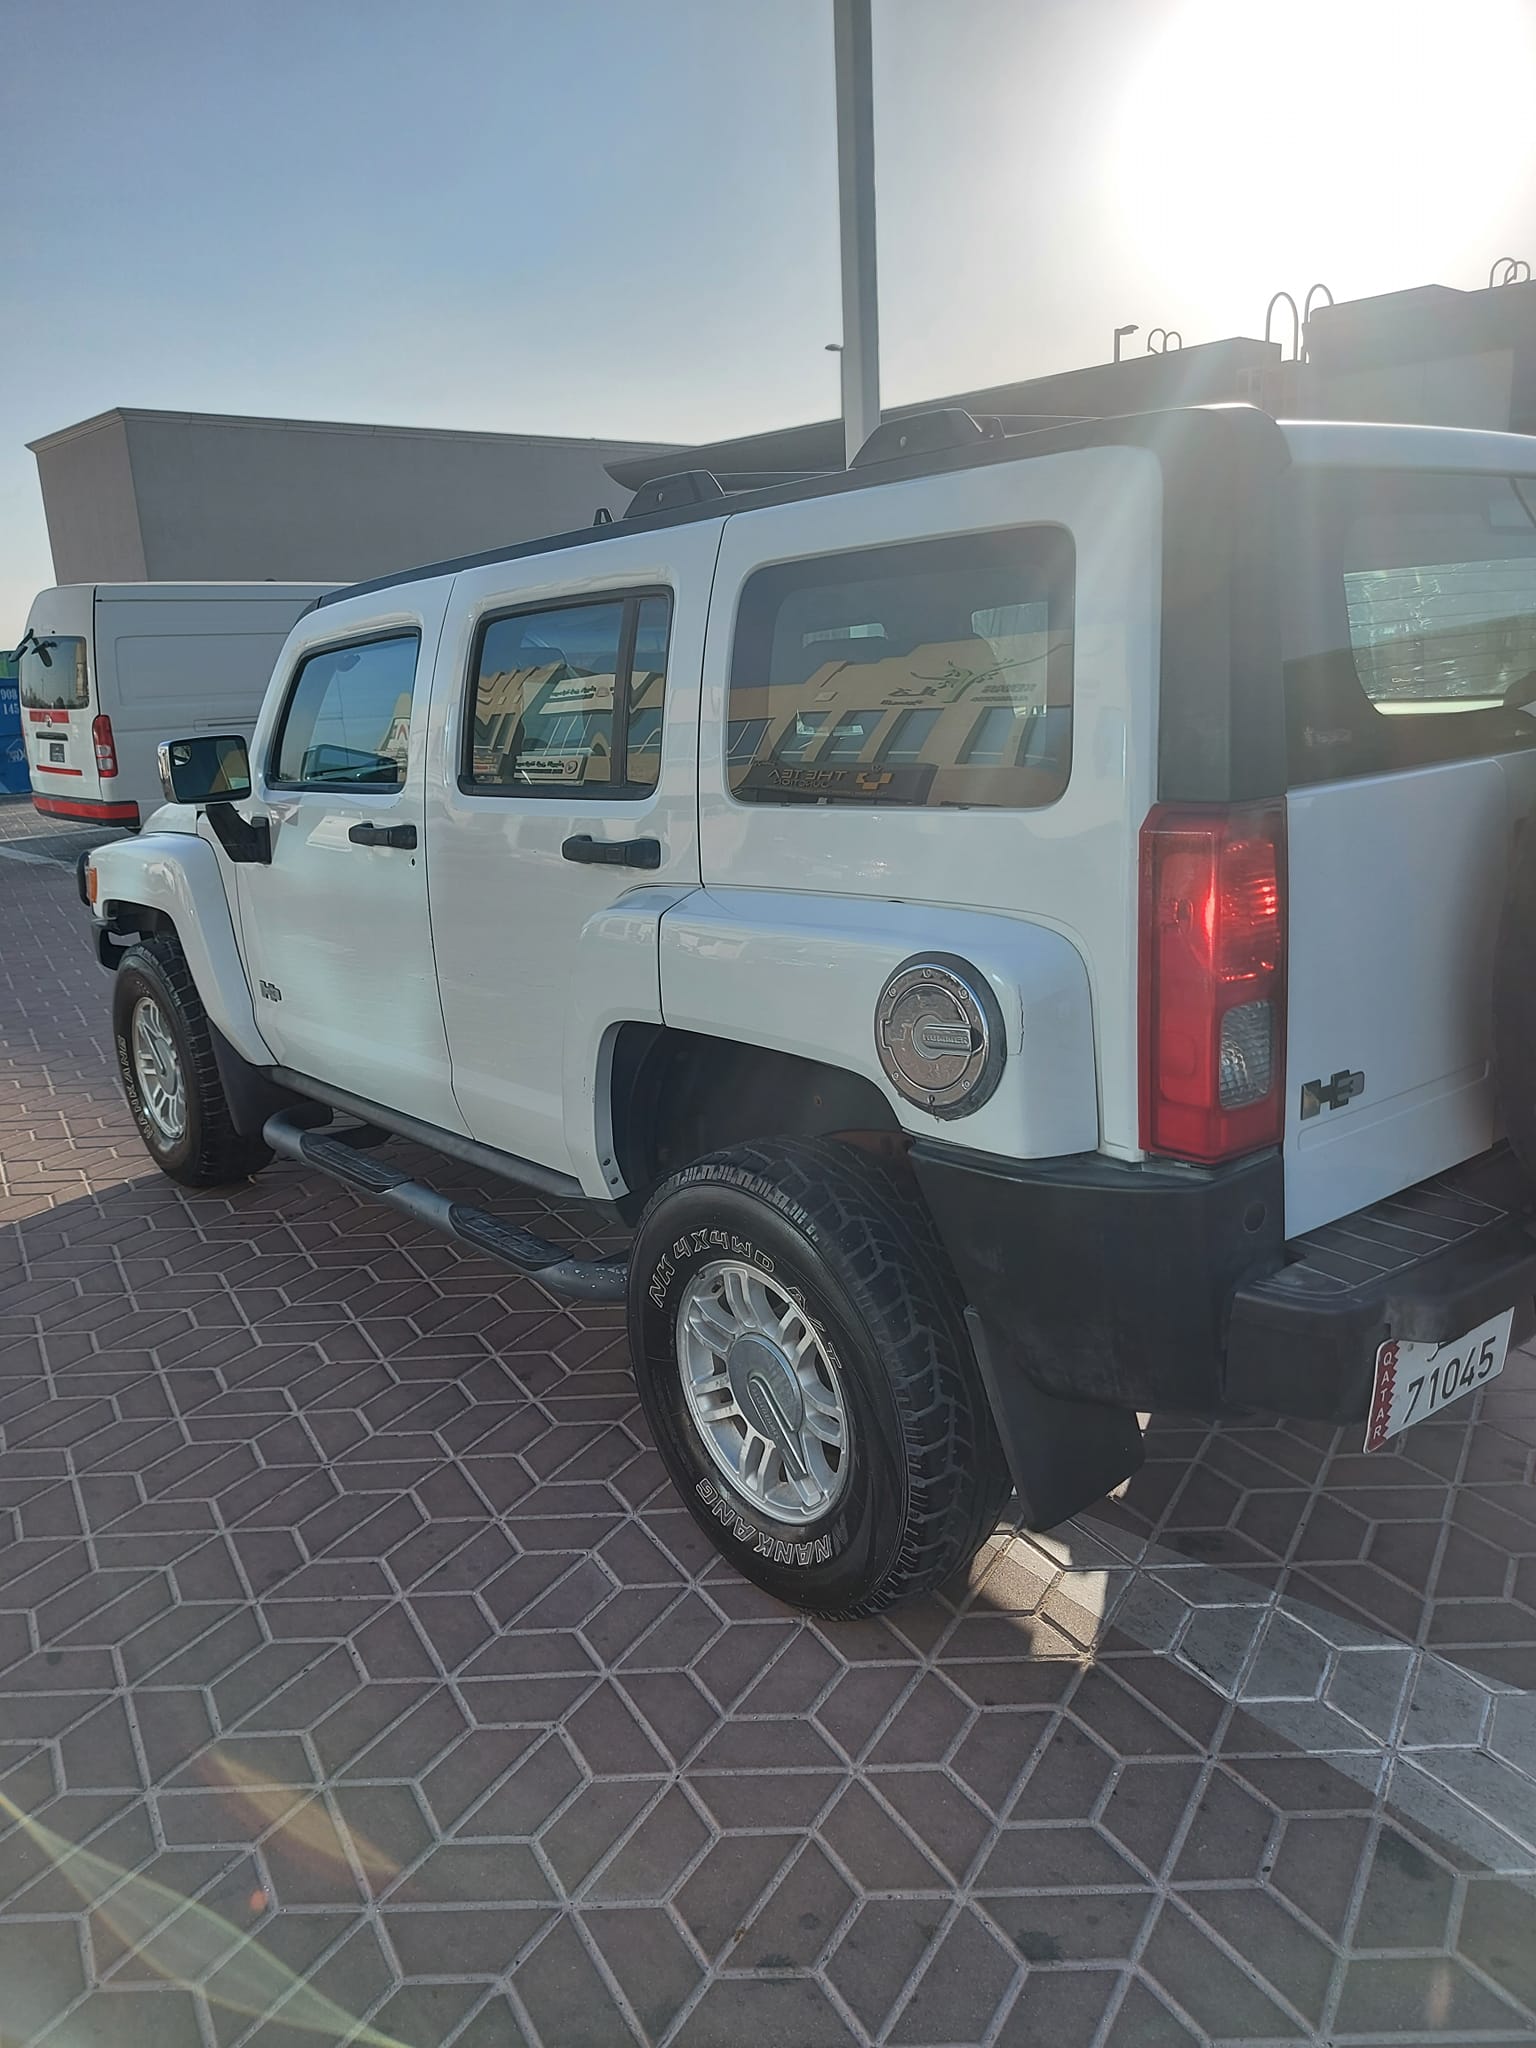 سيارات همر مستعملة للبيع في قطر ارخص سيارات مستعملة للبيع في قطر